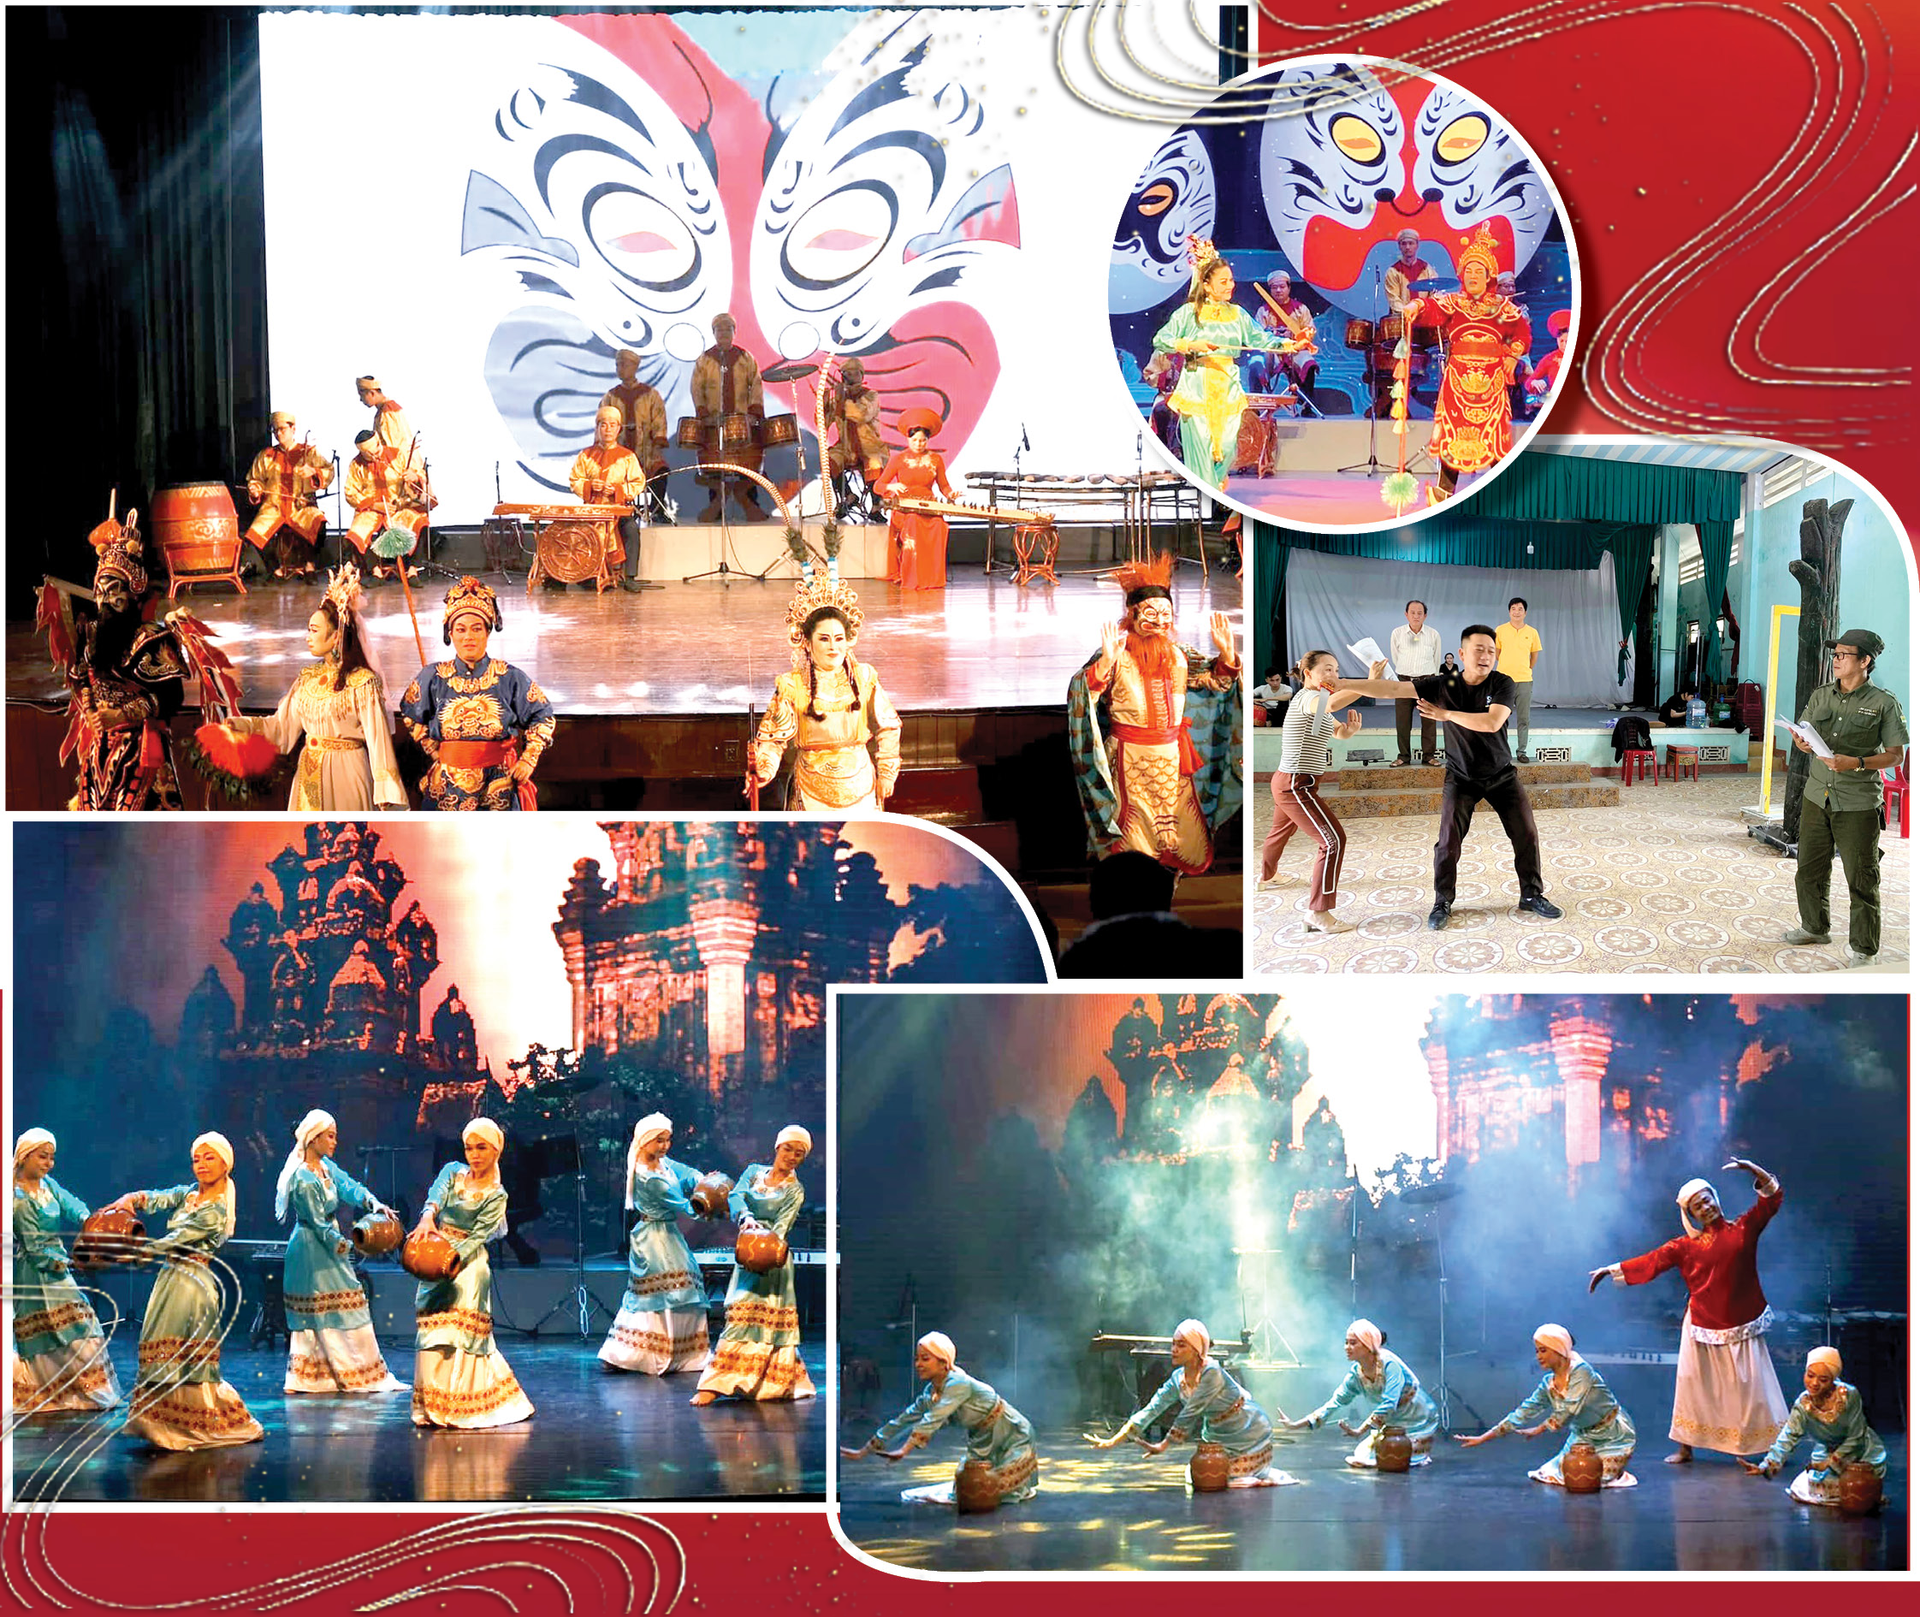 Nhà hát Tuồng Nguyễn Hiển Dĩnh chuyển đổi cách thức trình diễn theo hướng dễ hiểu, chủ động tiếp cận khán giả.